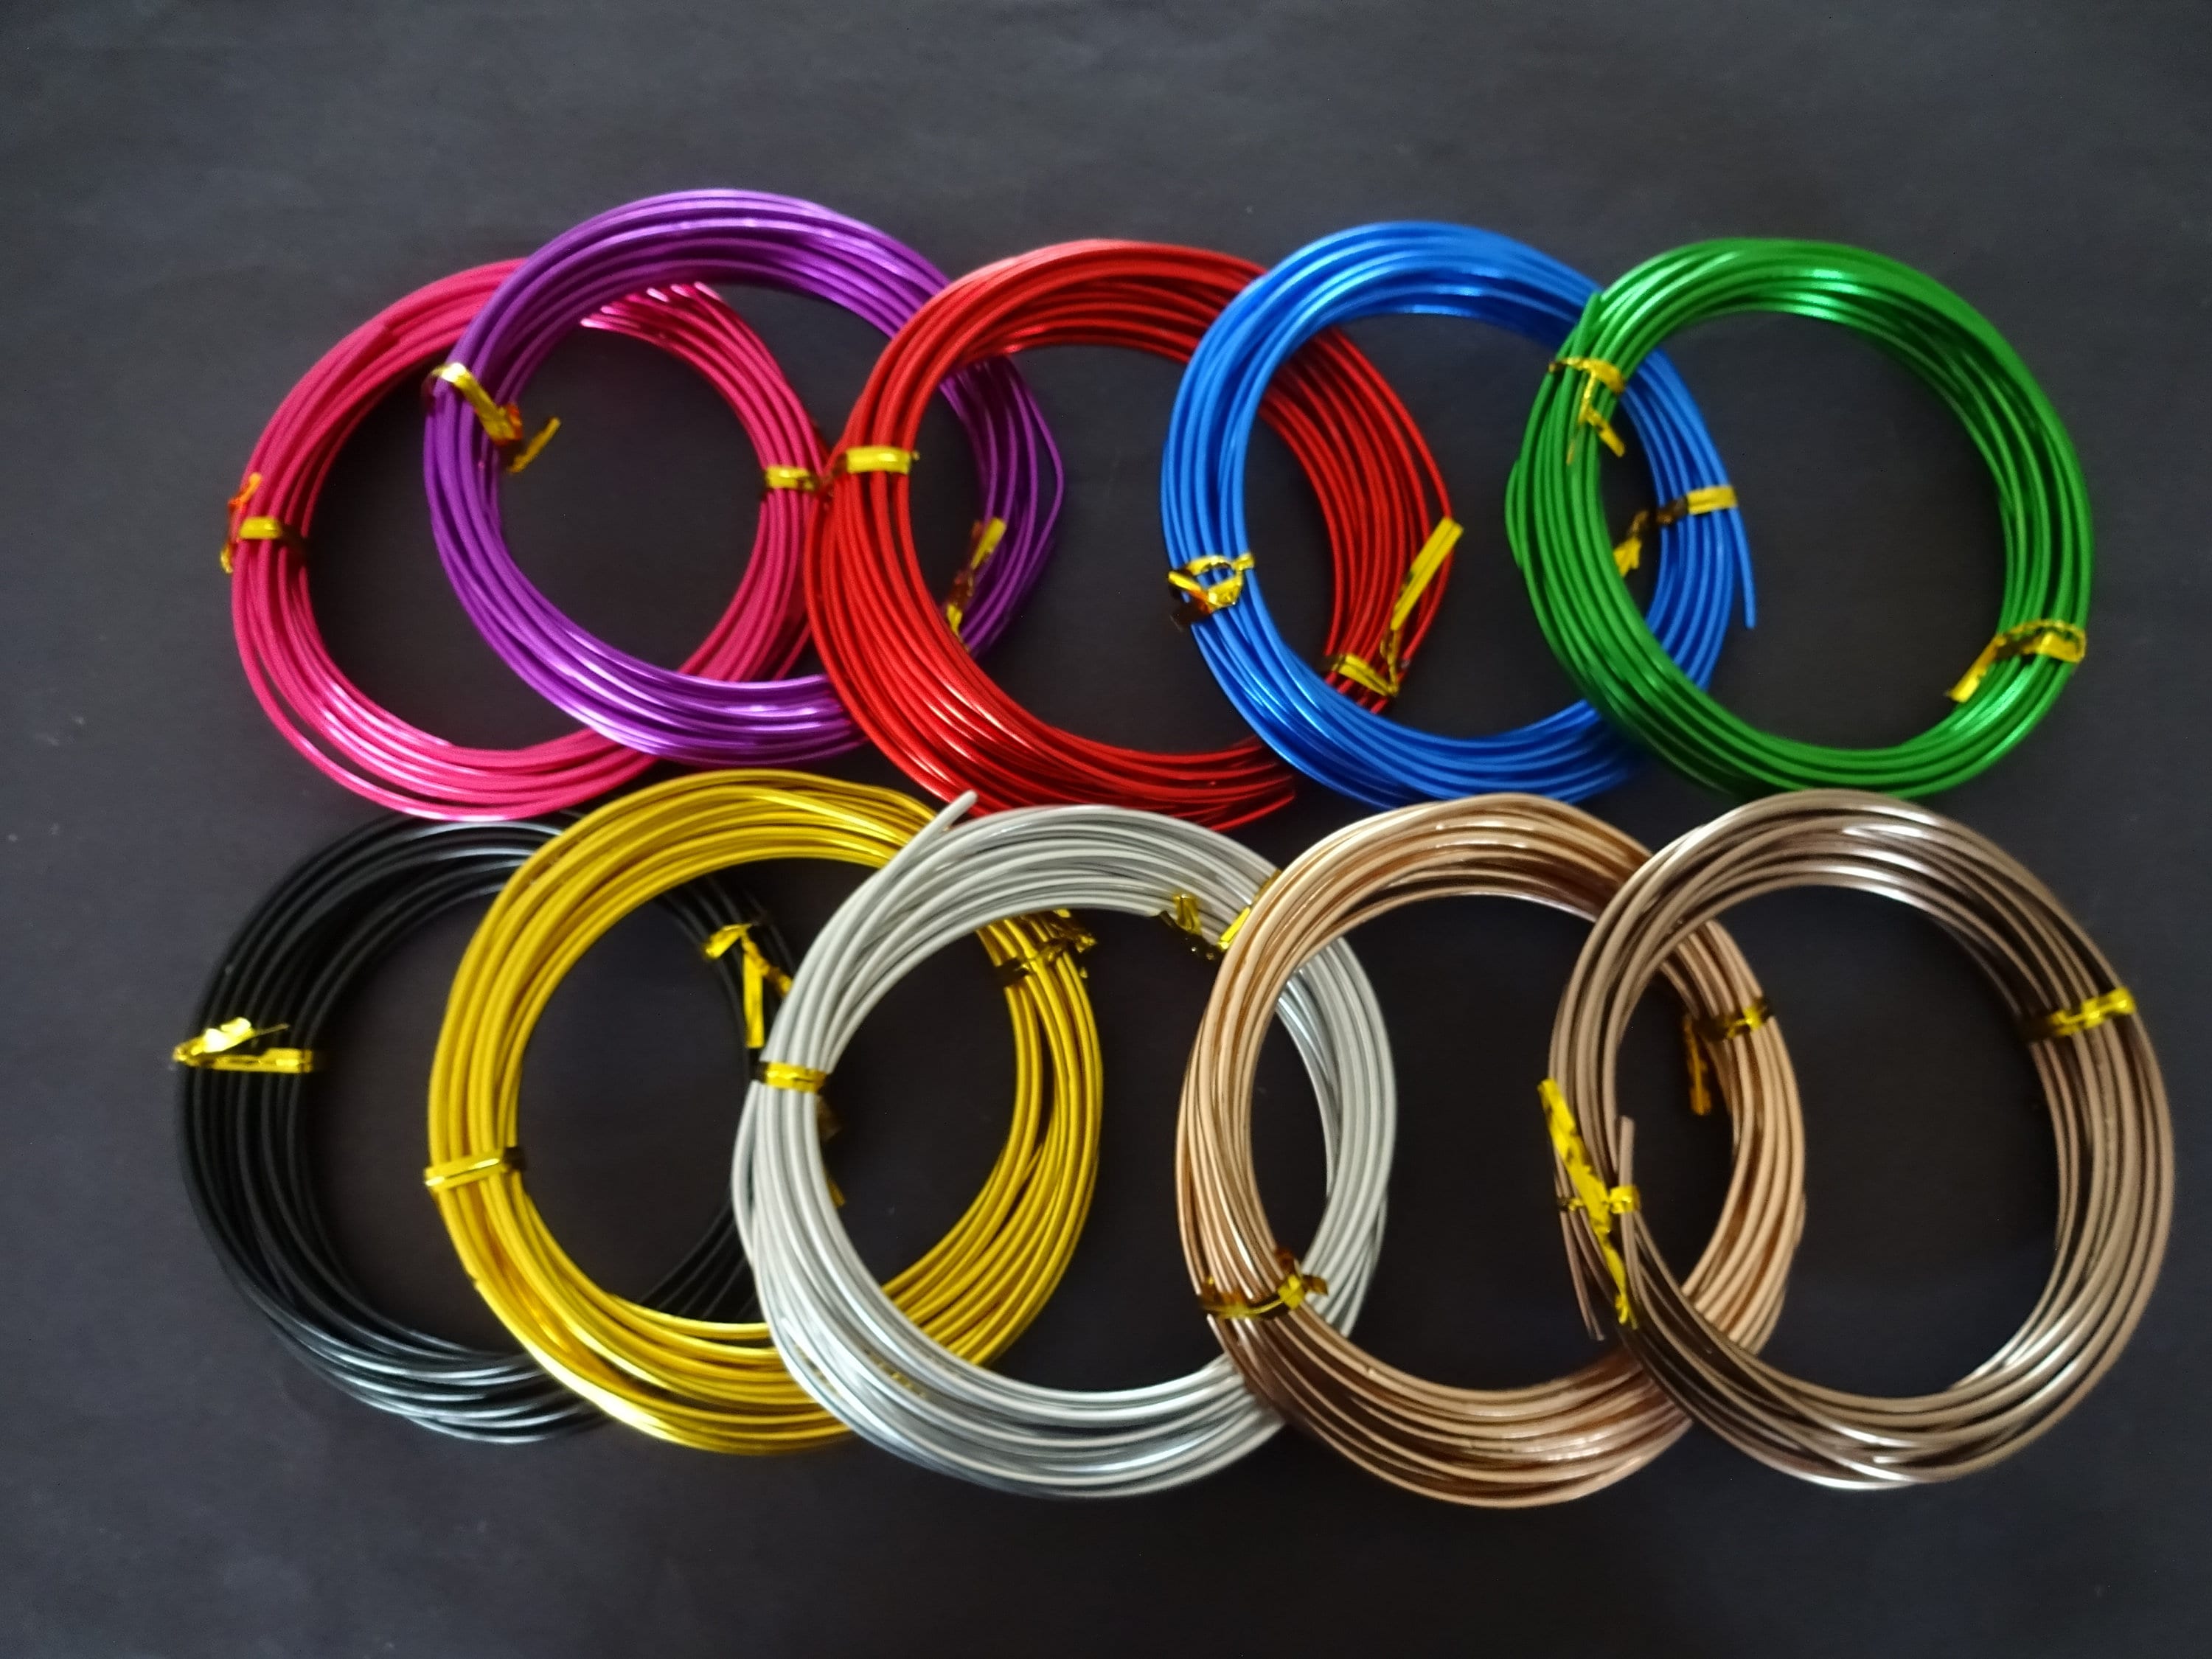 50 Meters of 3mm Mixed Color Aluminum Wire, 9 Gauge, 10 Rolls, 5